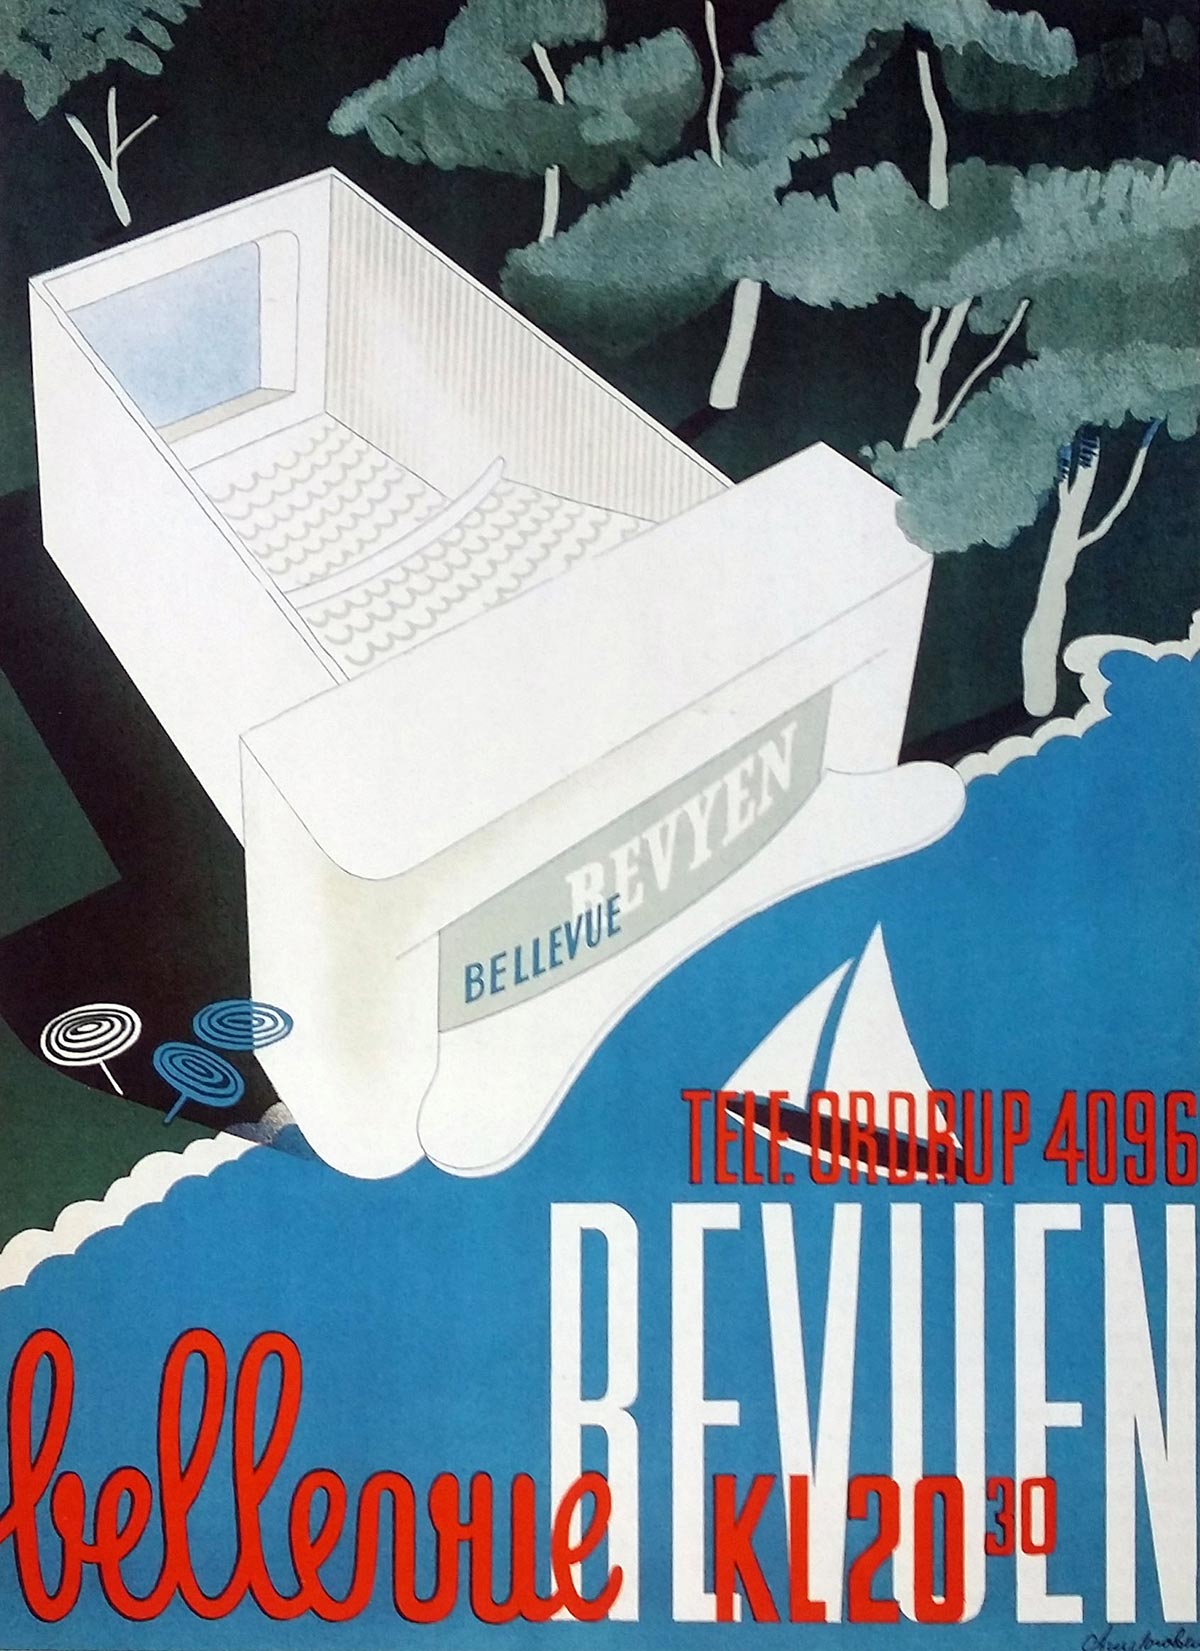 Cartel de los años 30 con el Teatro ‘Bellevue’ de Arne Jacobsen